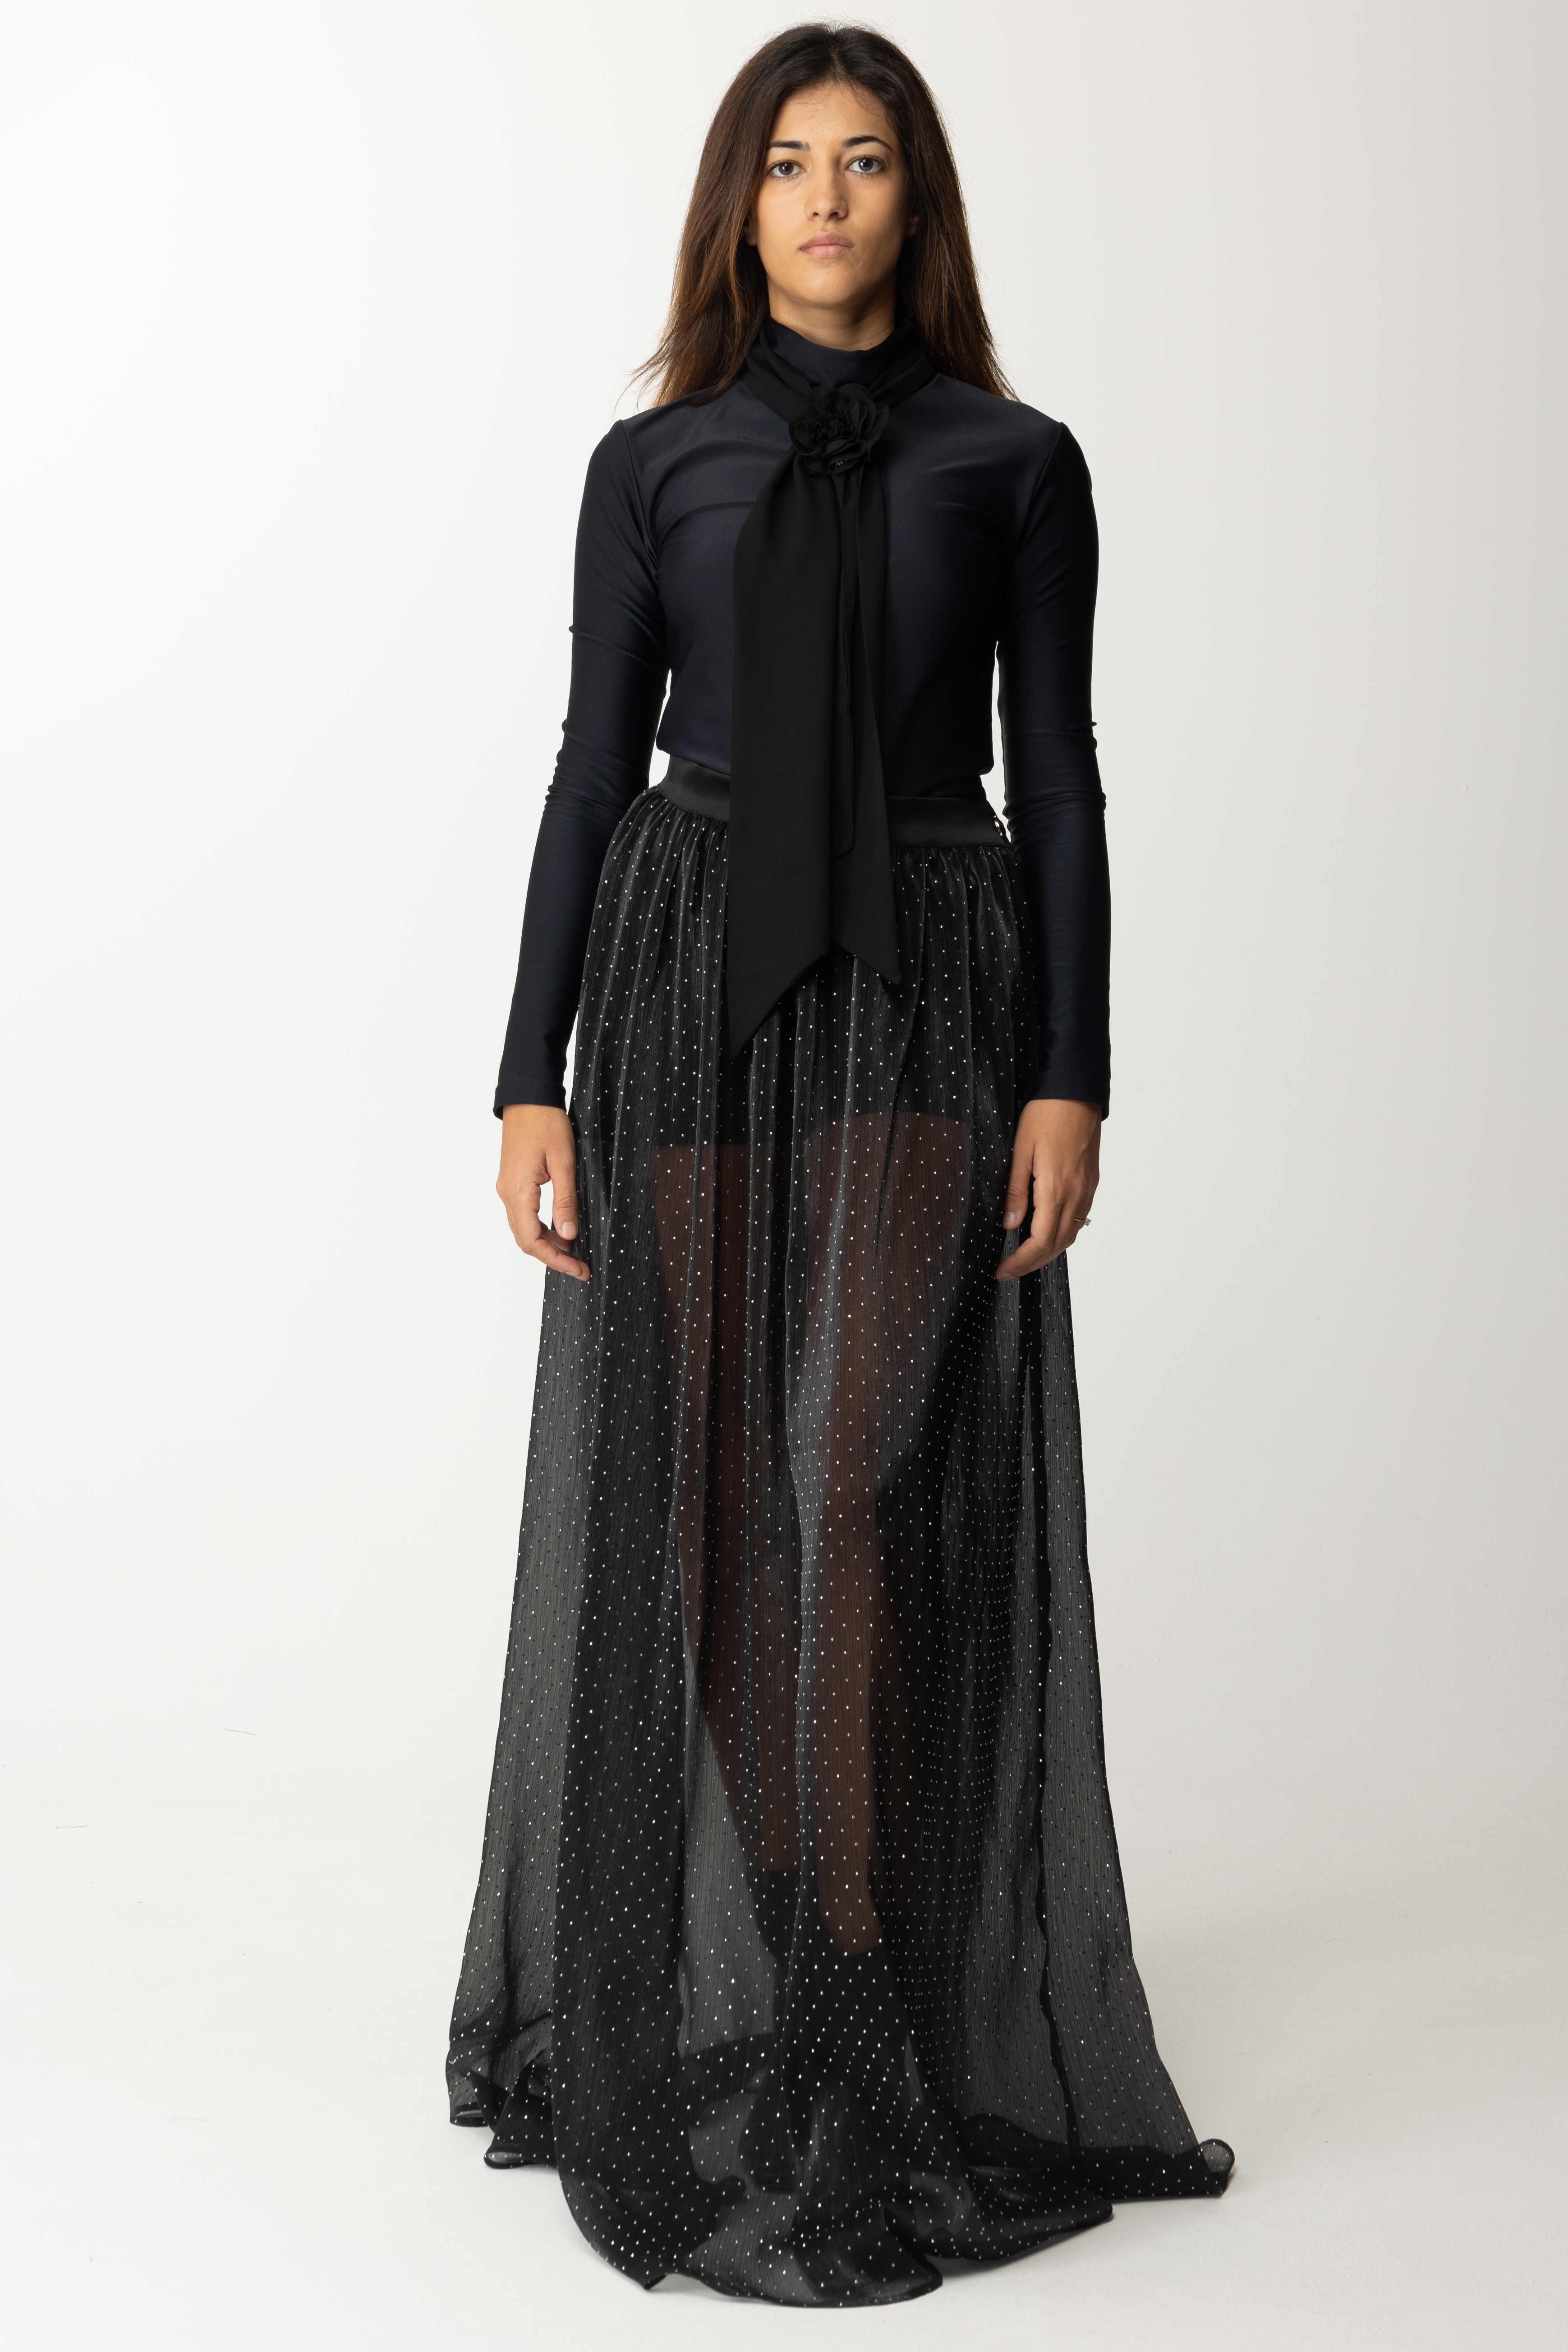 Podgląd: Gaelle Paris Długa sukienka ze spódnicą z kryształkami Nero